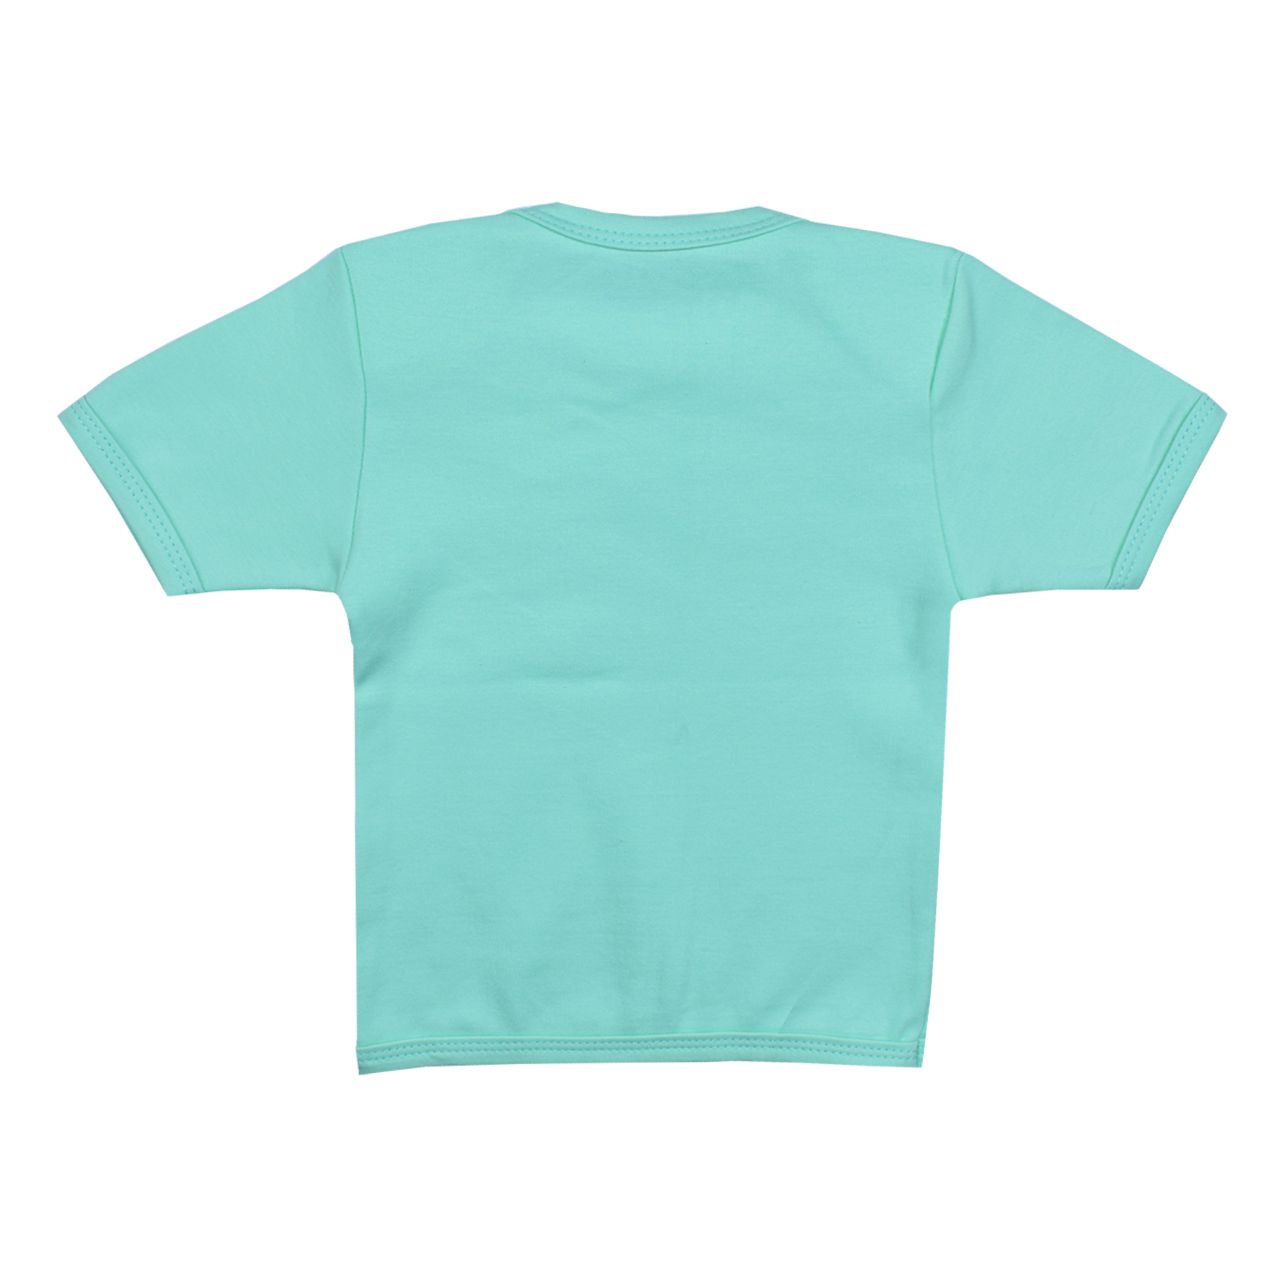 تی شرت آستین کوتاه نوزادی اسپیکو کد 300 -2 بسته دو عددی -  - 5